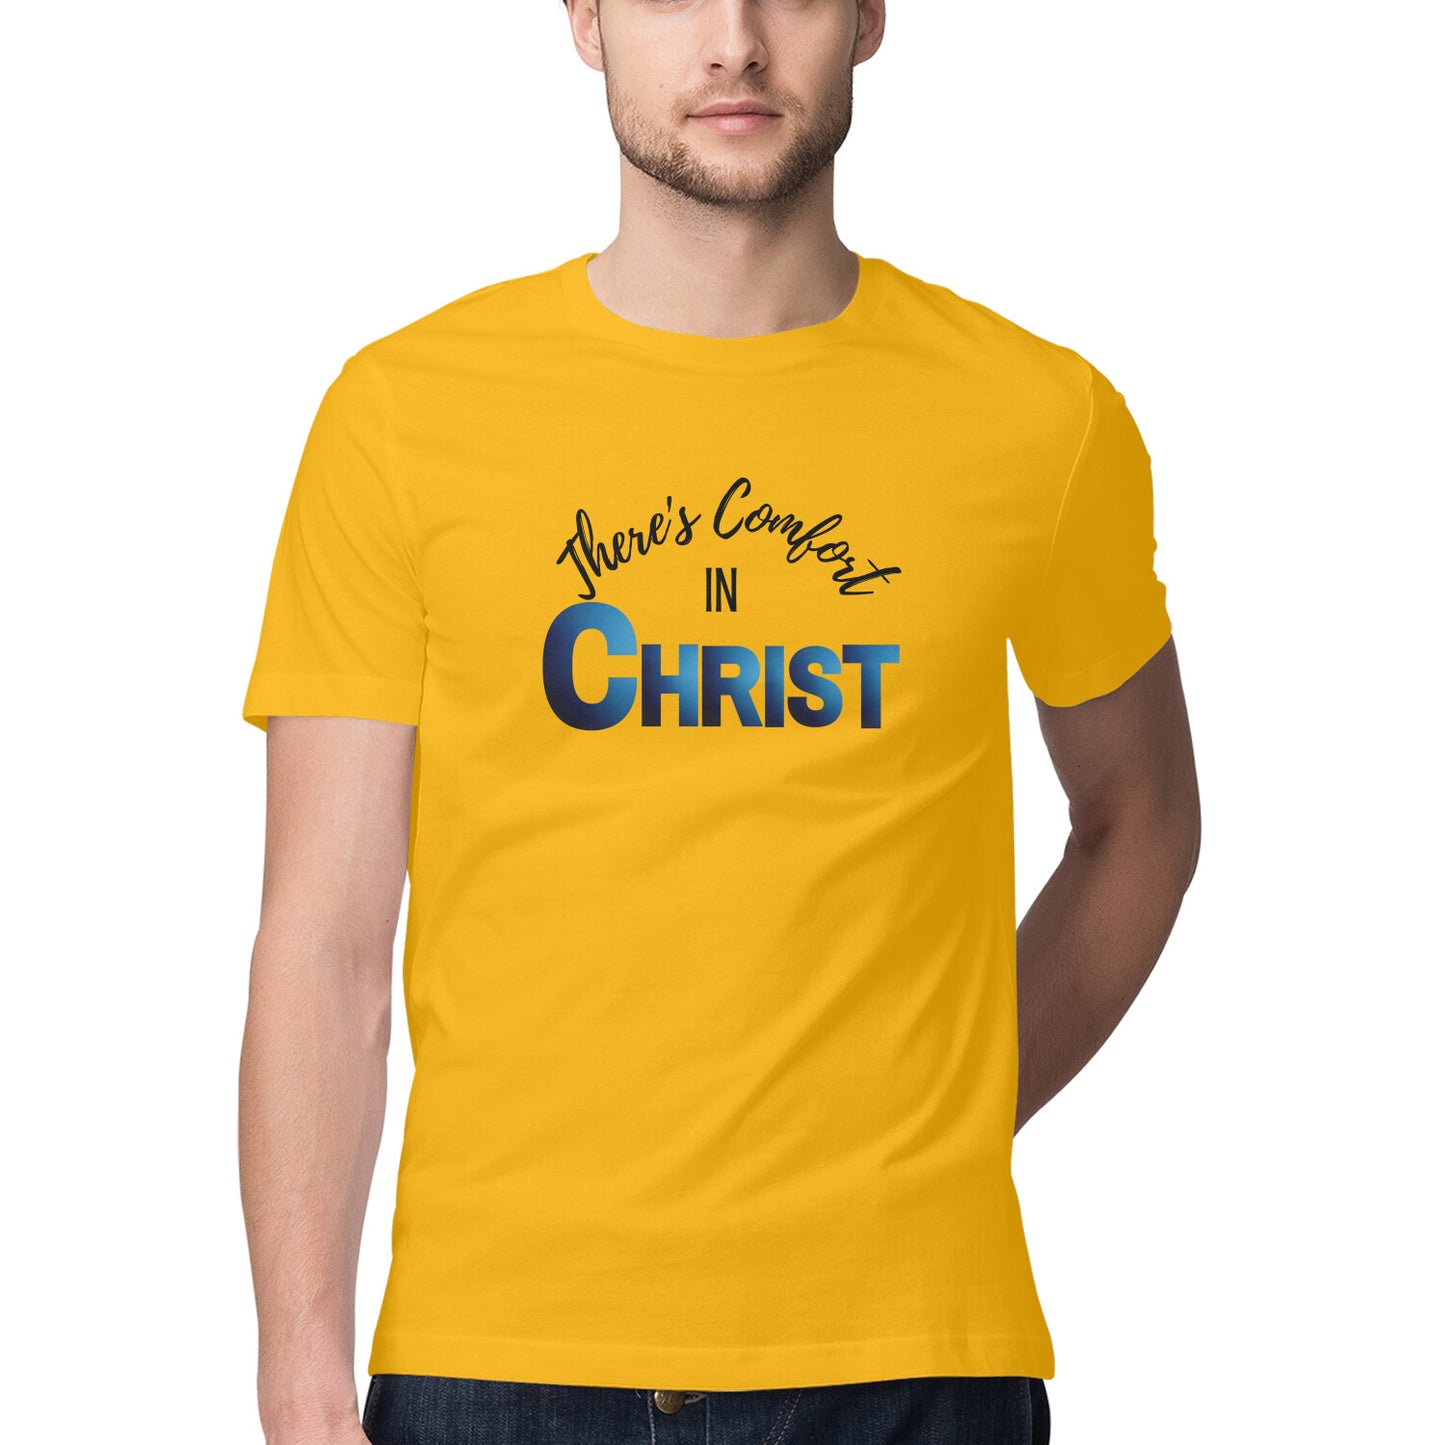 Comfort in Christ' Men's tee